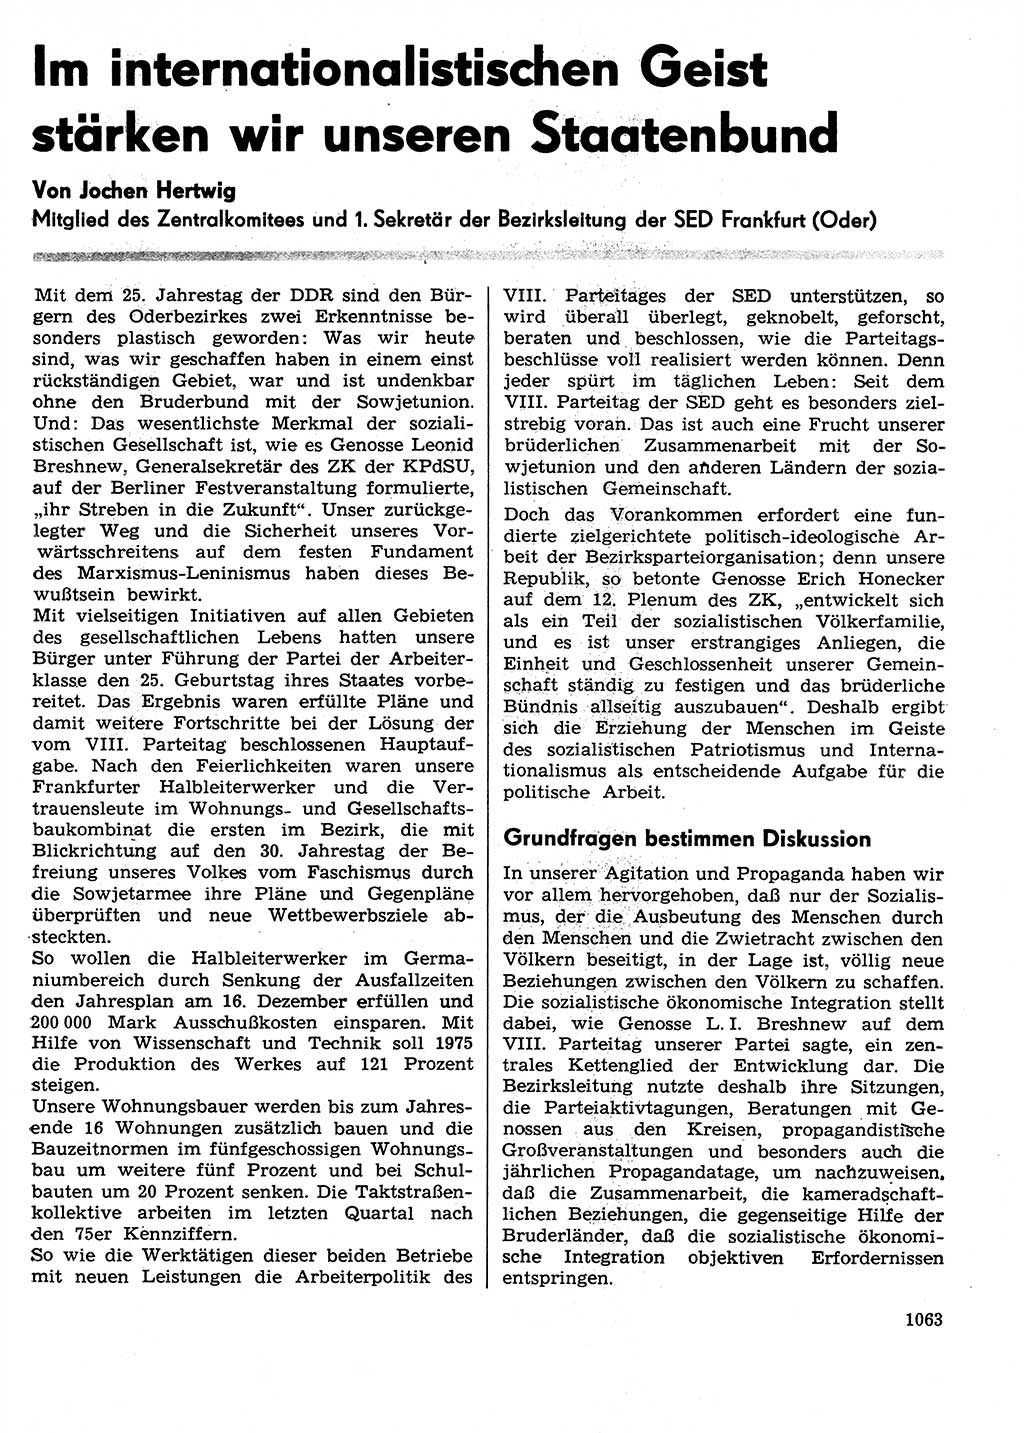 Neuer Weg (NW), Organ des Zentralkomitees (ZK) der SED (Sozialistische Einheitspartei Deutschlands) für Fragen des Parteilebens, 29. Jahrgang [Deutsche Demokratische Republik (DDR)] 1974, Seite 1063 (NW ZK SED DDR 1974, S. 1063)